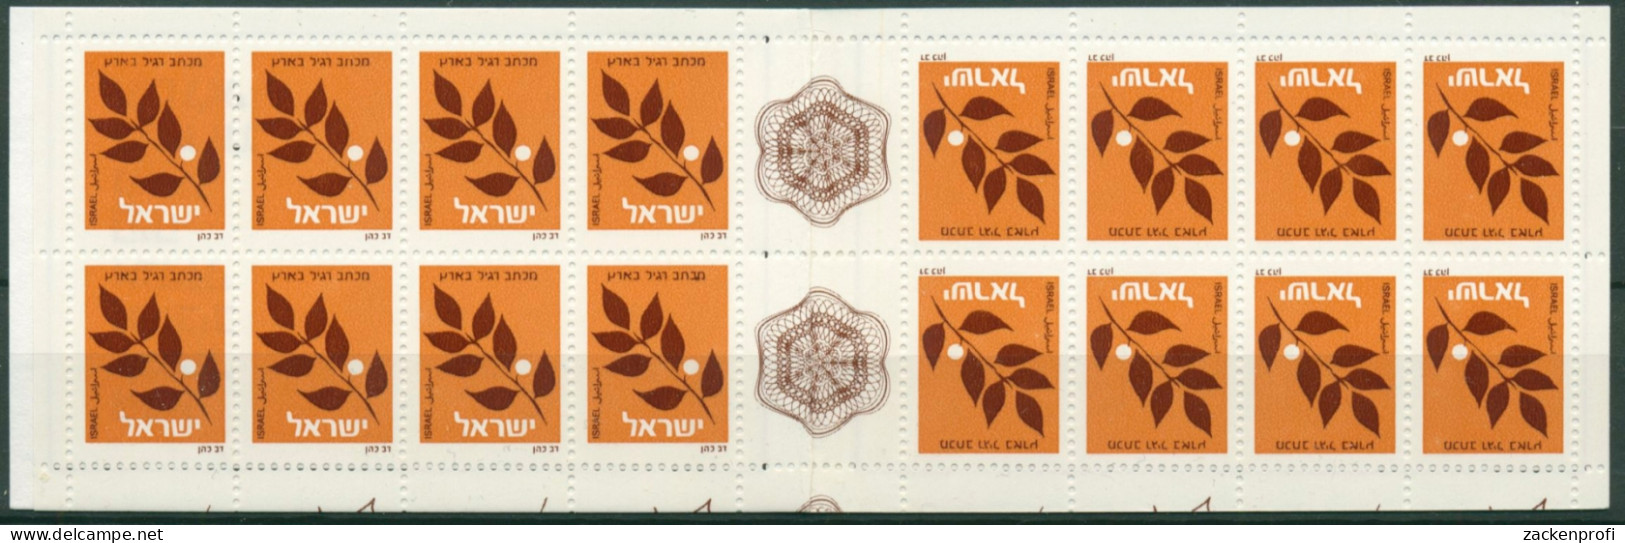 Israel 1982 Ölbaumzweig Markenheftchen 893 A MH Postfrisch (C30342) - Markenheftchen